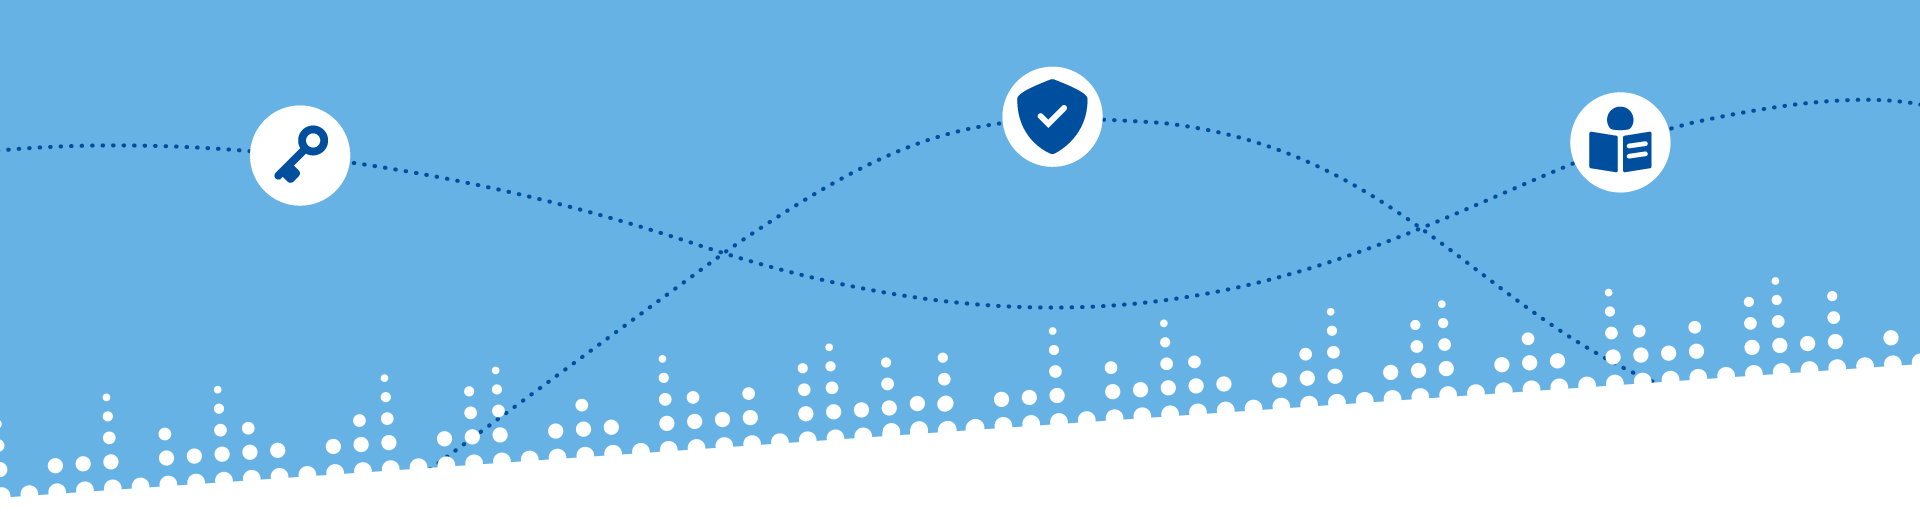 Hellblauer Hintergrund mit gestrichelten Linien und drei Icons zum Datenschutz